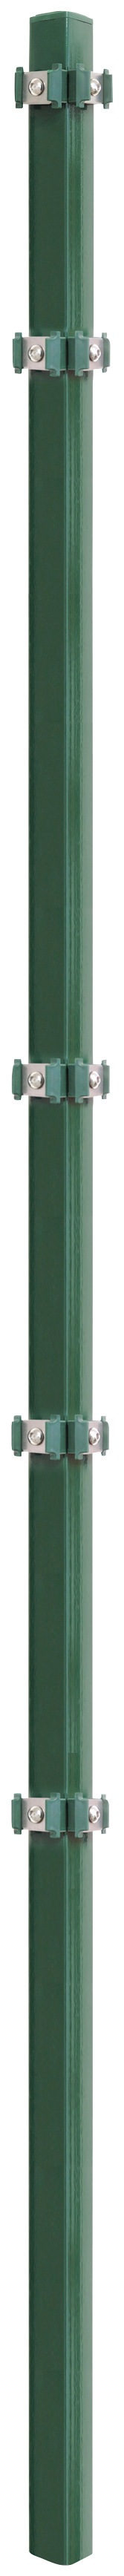 Arvotec Eckpfosten "ESSENTIAL 200", 4x4x260 cm für Mattenhöhe 200 cm, zum E günstig online kaufen